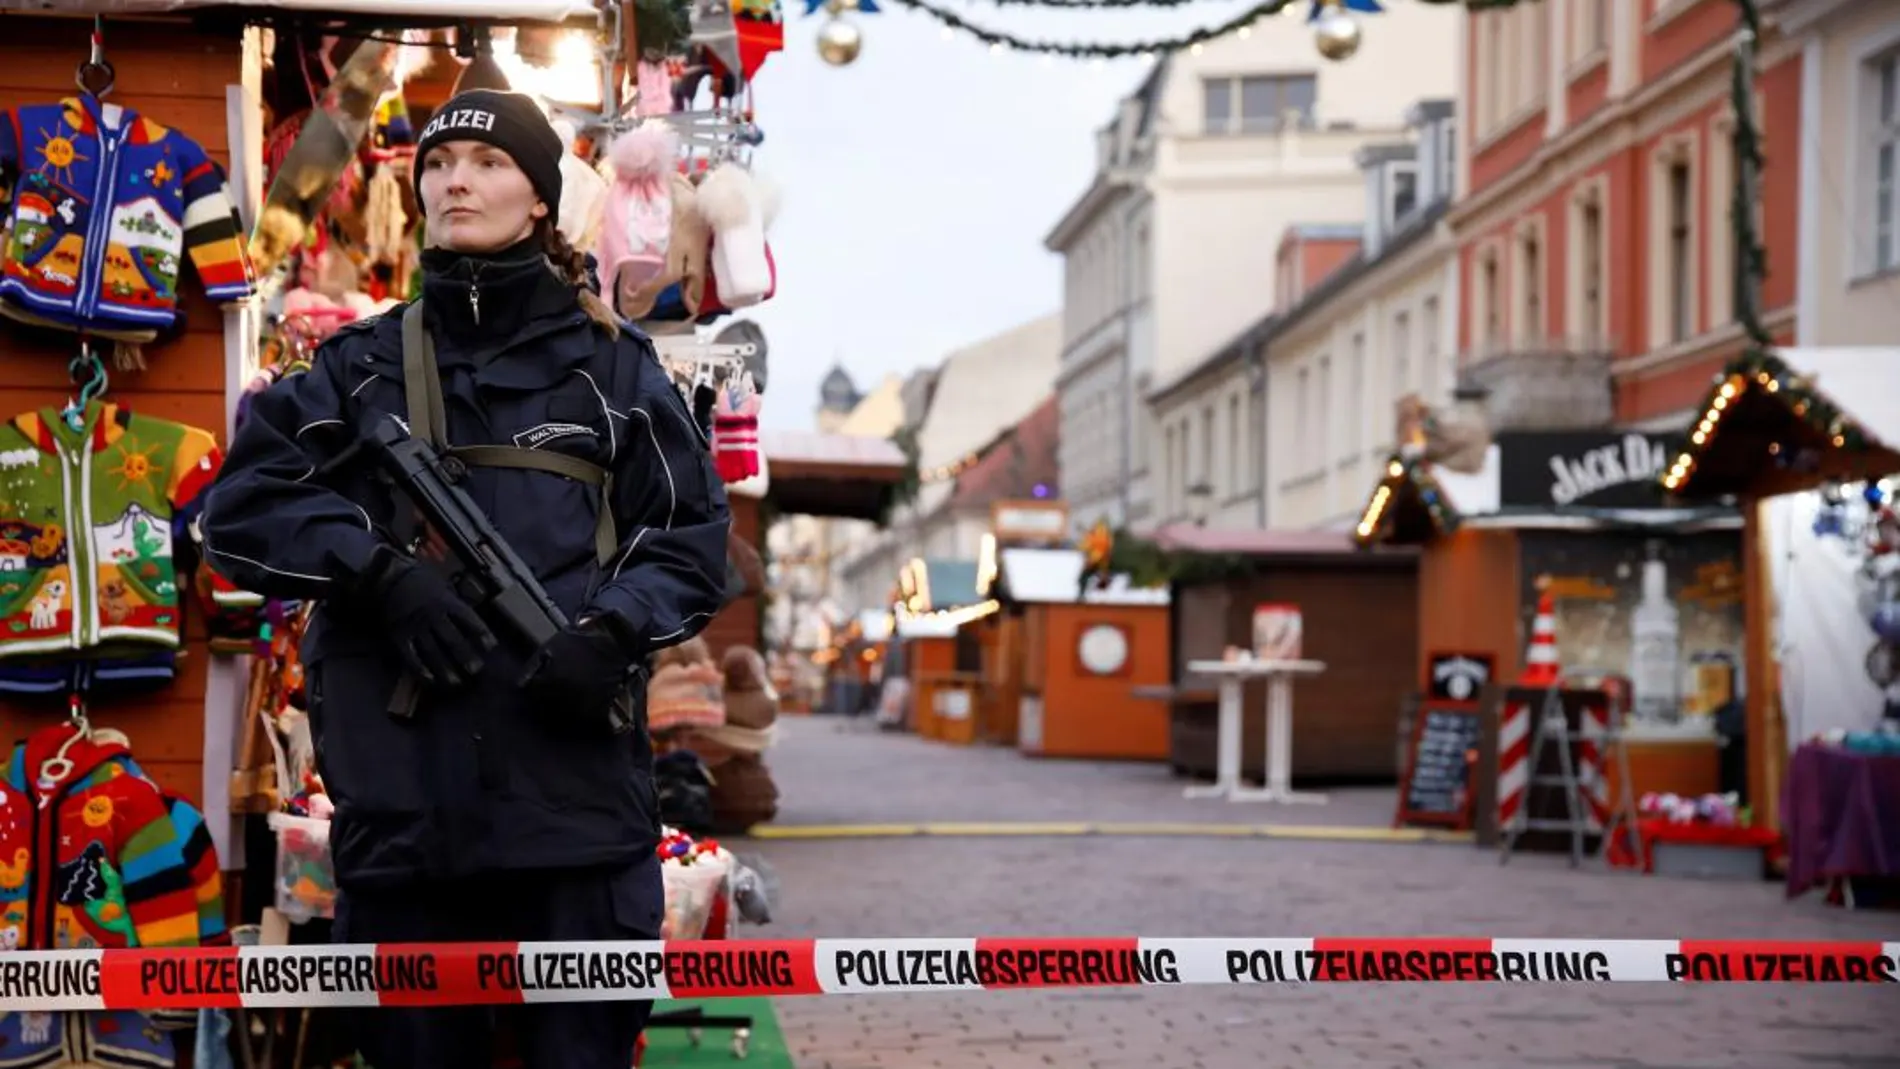 La Policía monta guardia en el mercado navideño de Postdam